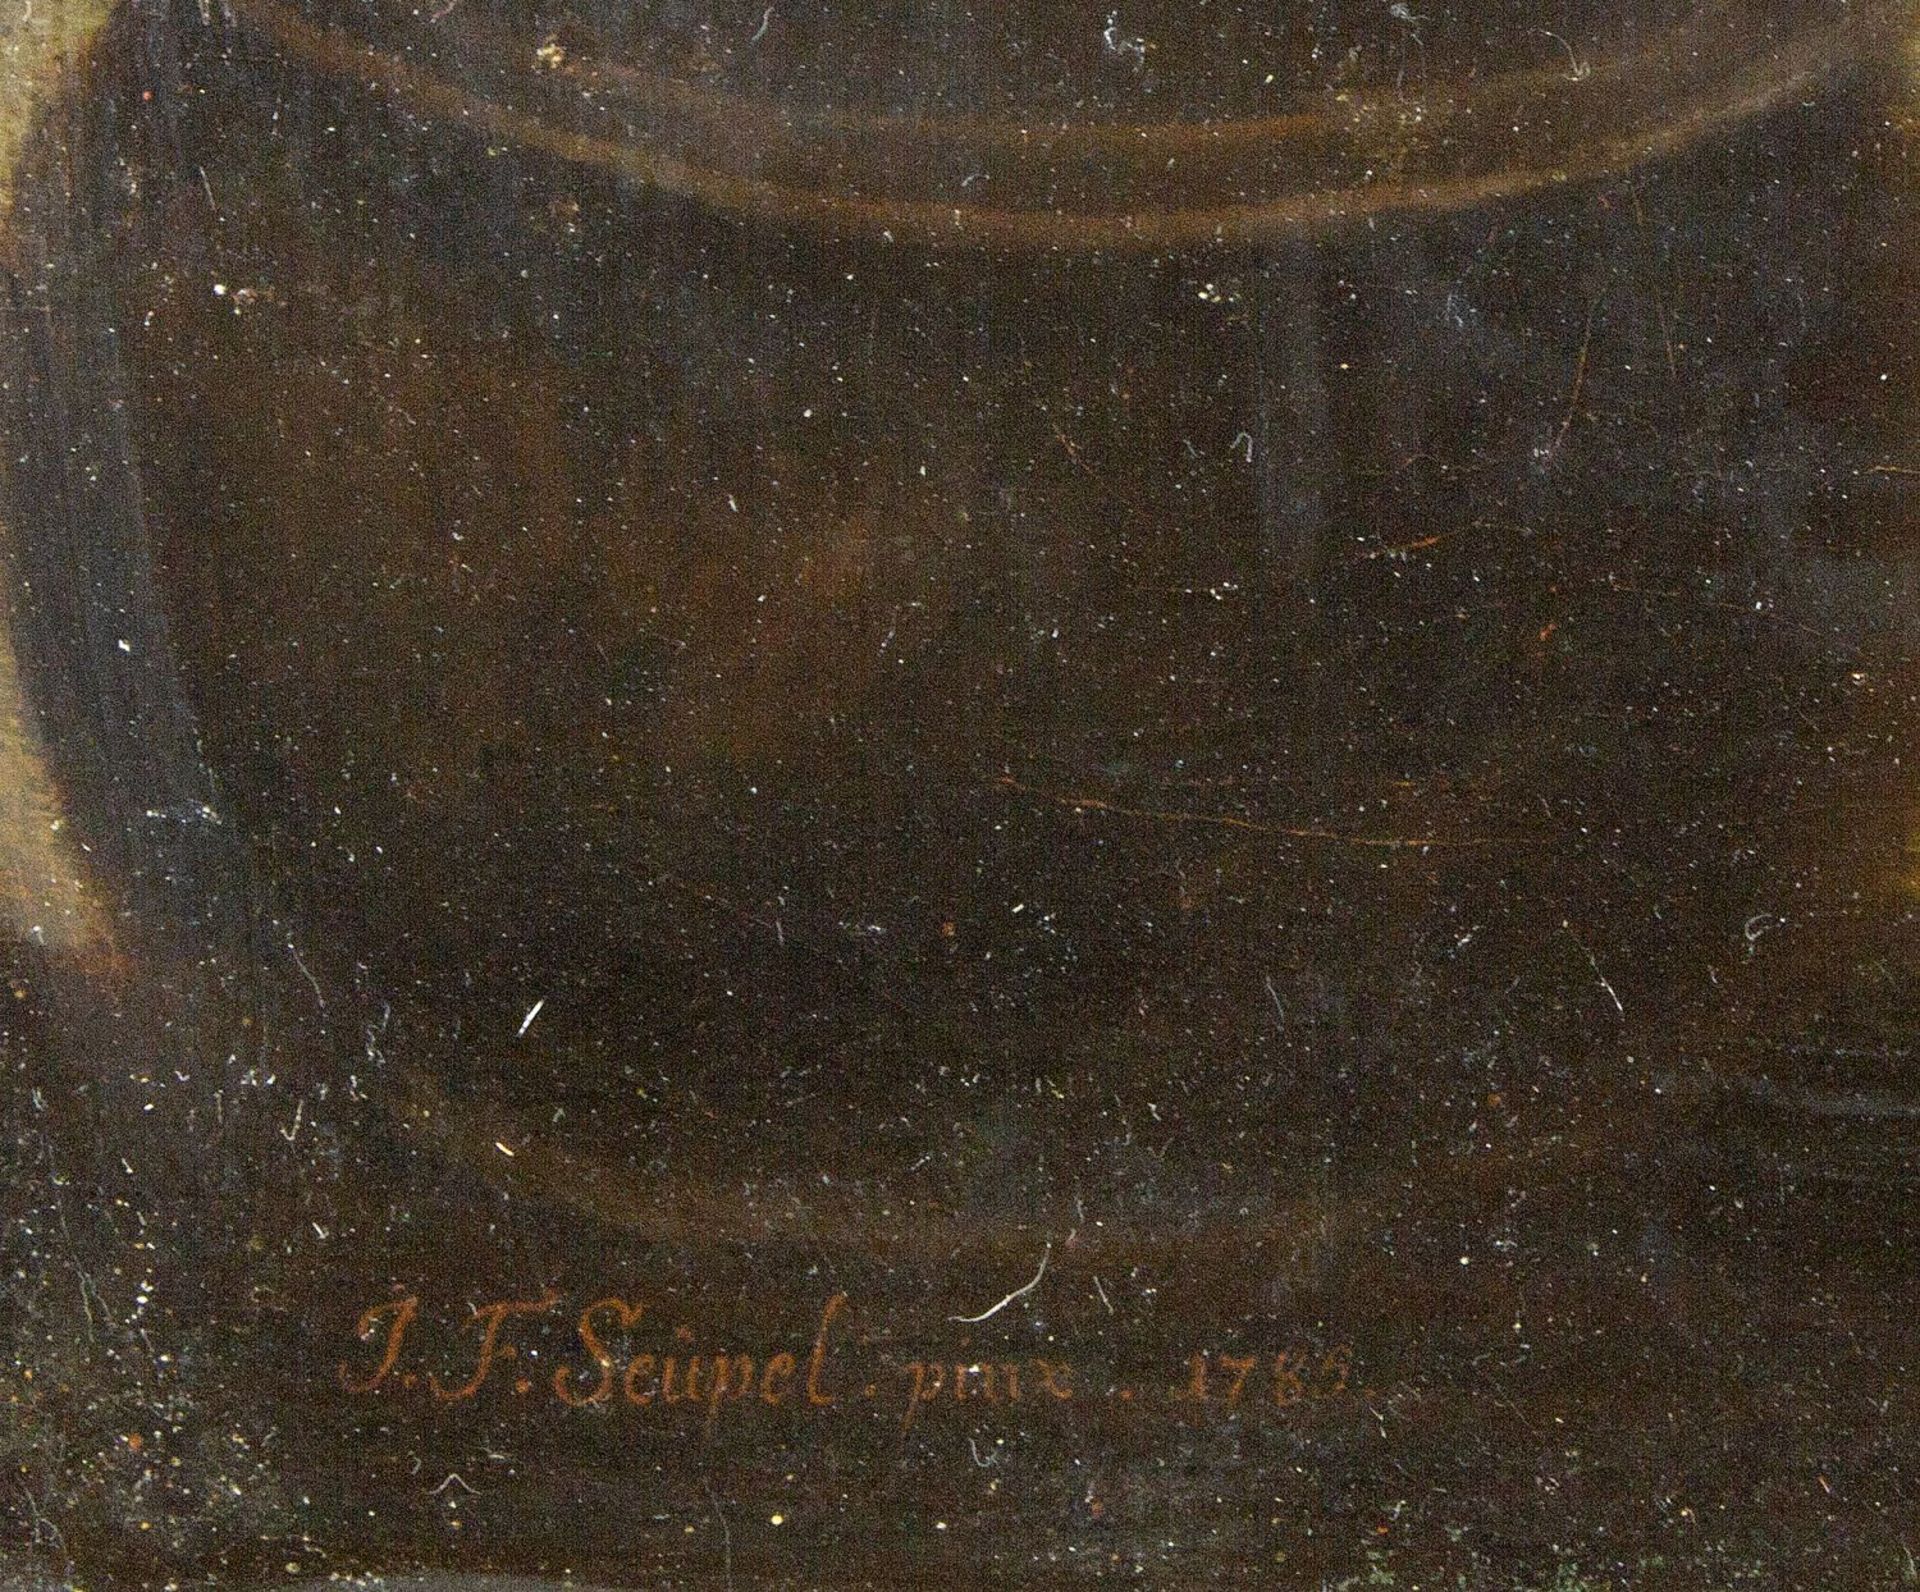 Seupel, Johann Friedrich. 18. Jh. - Bild 2 aus 4